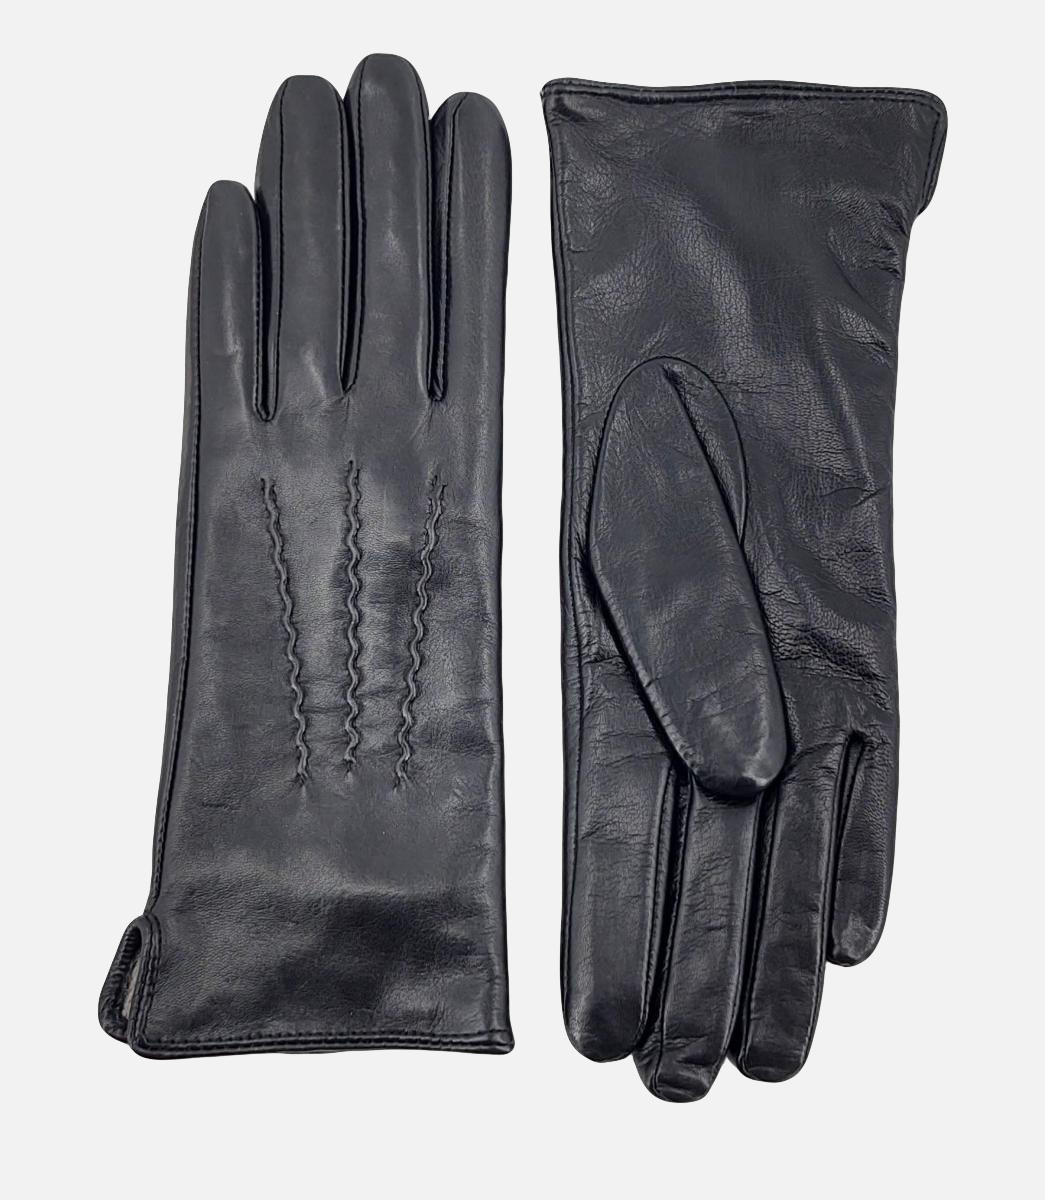 127 Glove - Leather / Læder handske - Accesories - Black